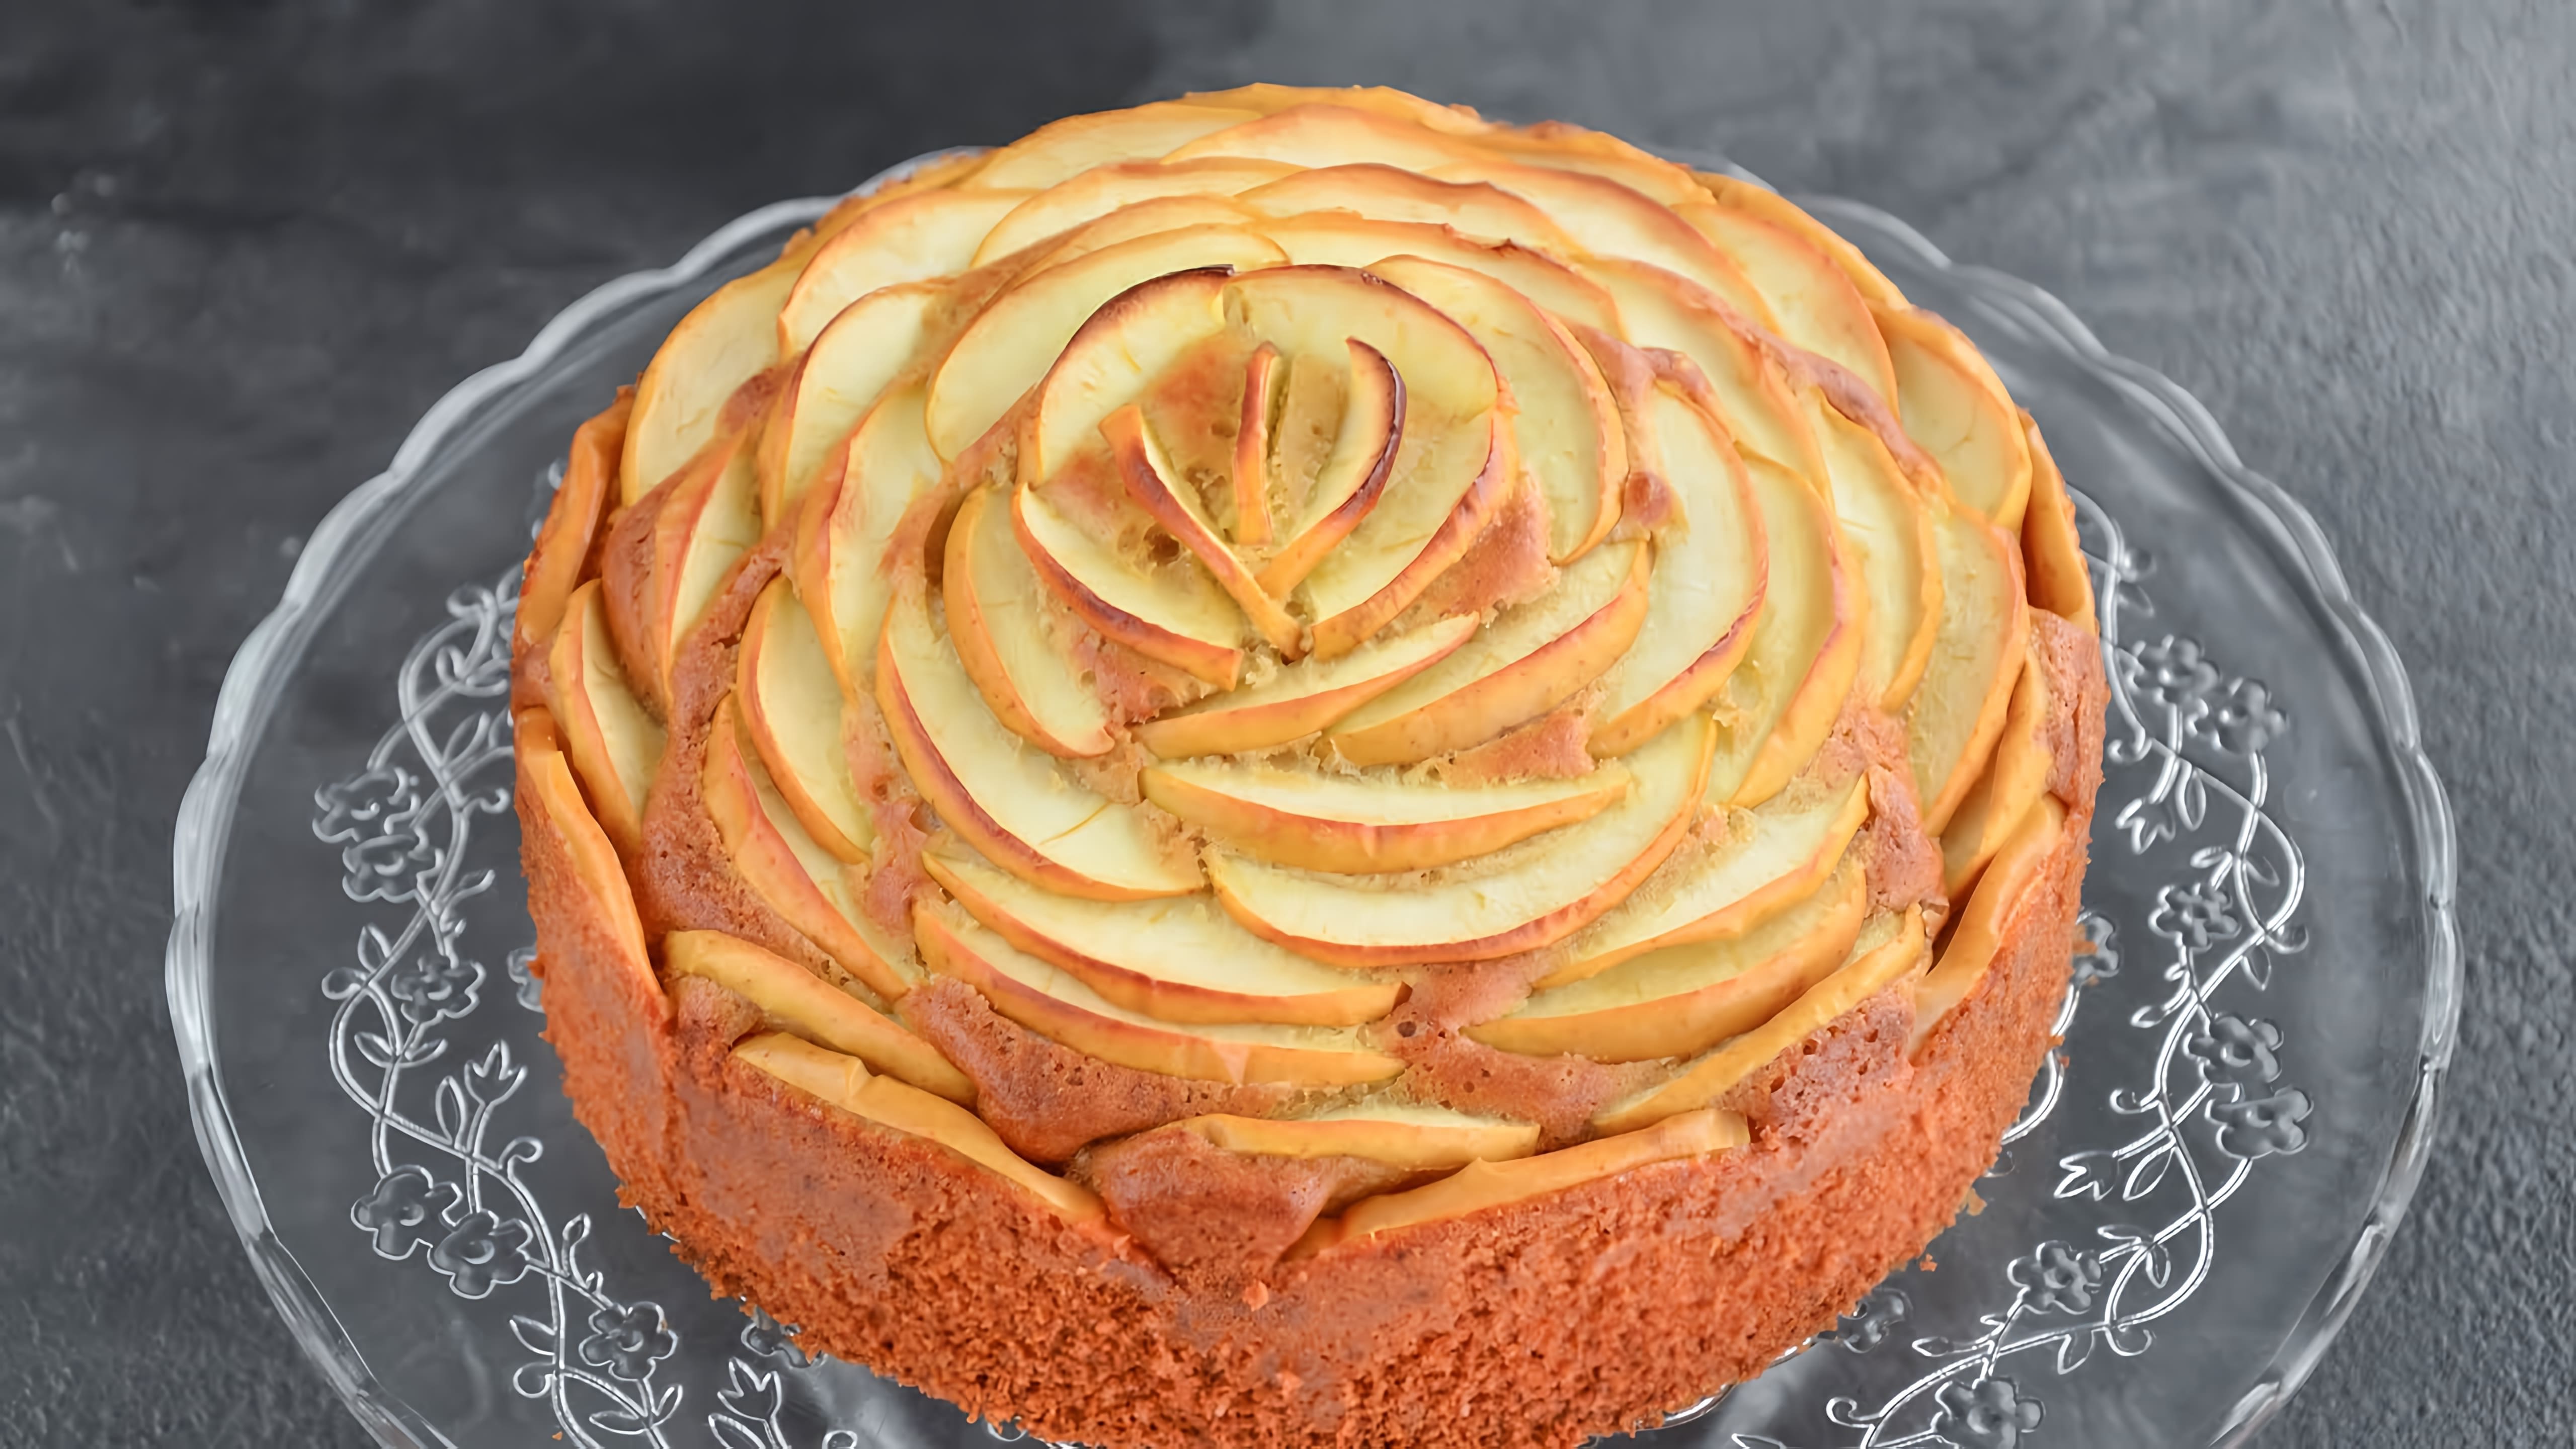 В этом видео демонстрируется рецепт приготовления пирога с яблоками